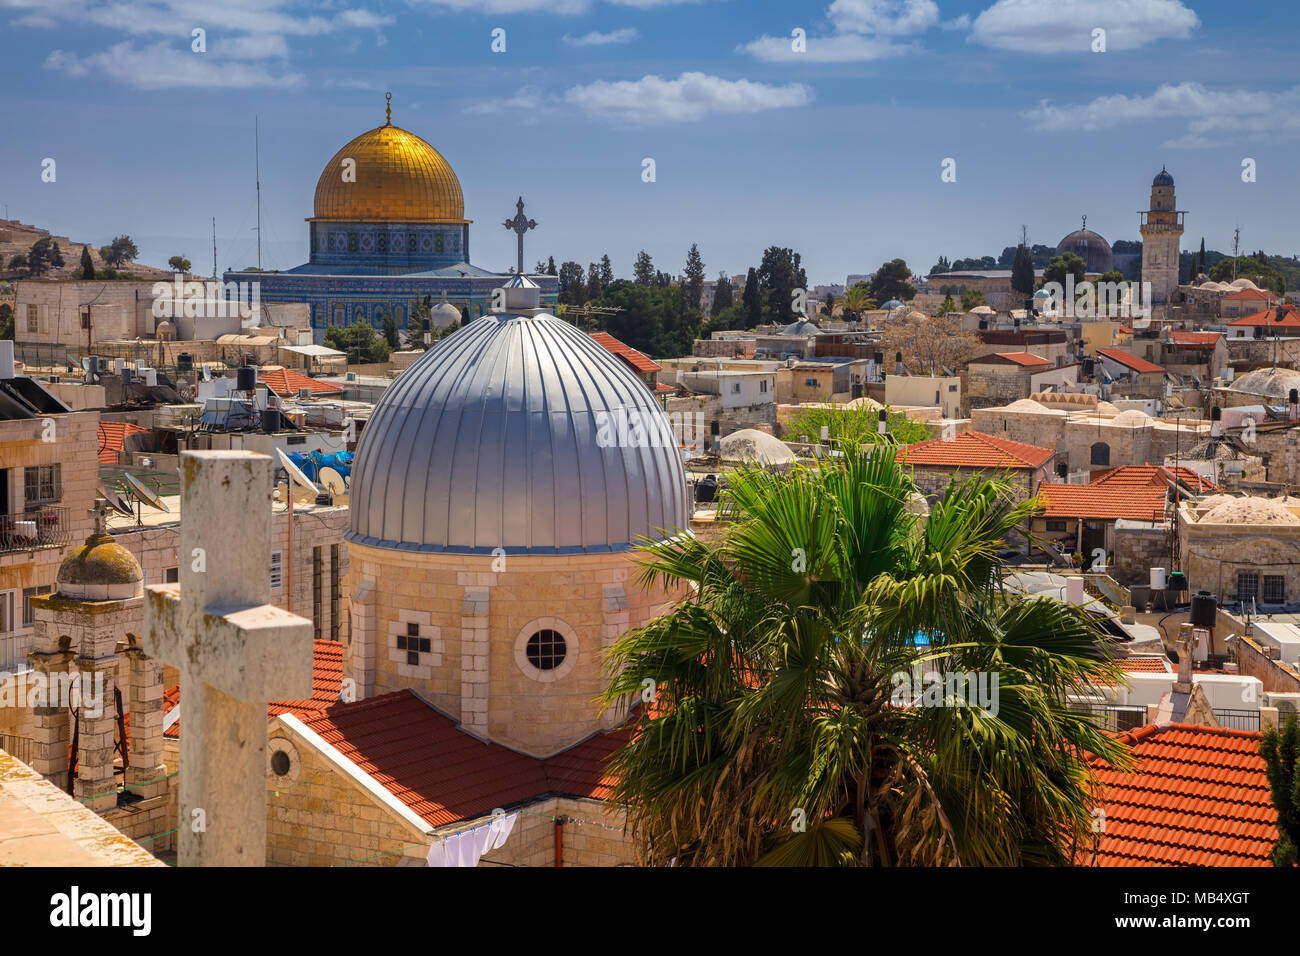 Gerusalemme. Immagine di panorama urbano della città vecchia di Gerusalemme, Israele con la Chiesa di Santa Maria di agonia e la Cupola della roccia. Foto Stock